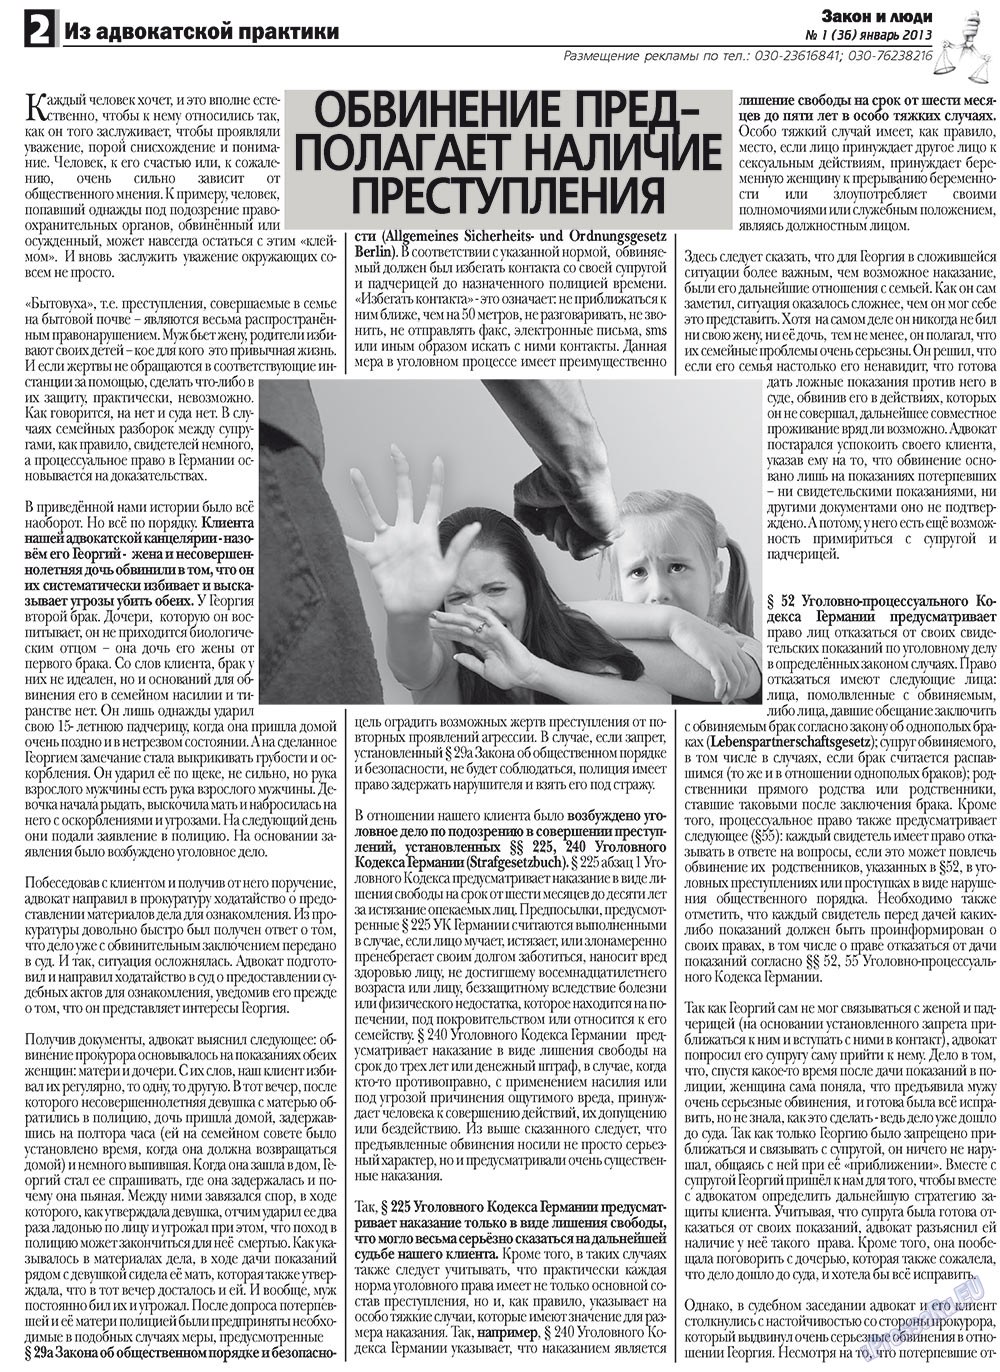 Закон и люди (газета). 2013 год, номер 1, стр. 2